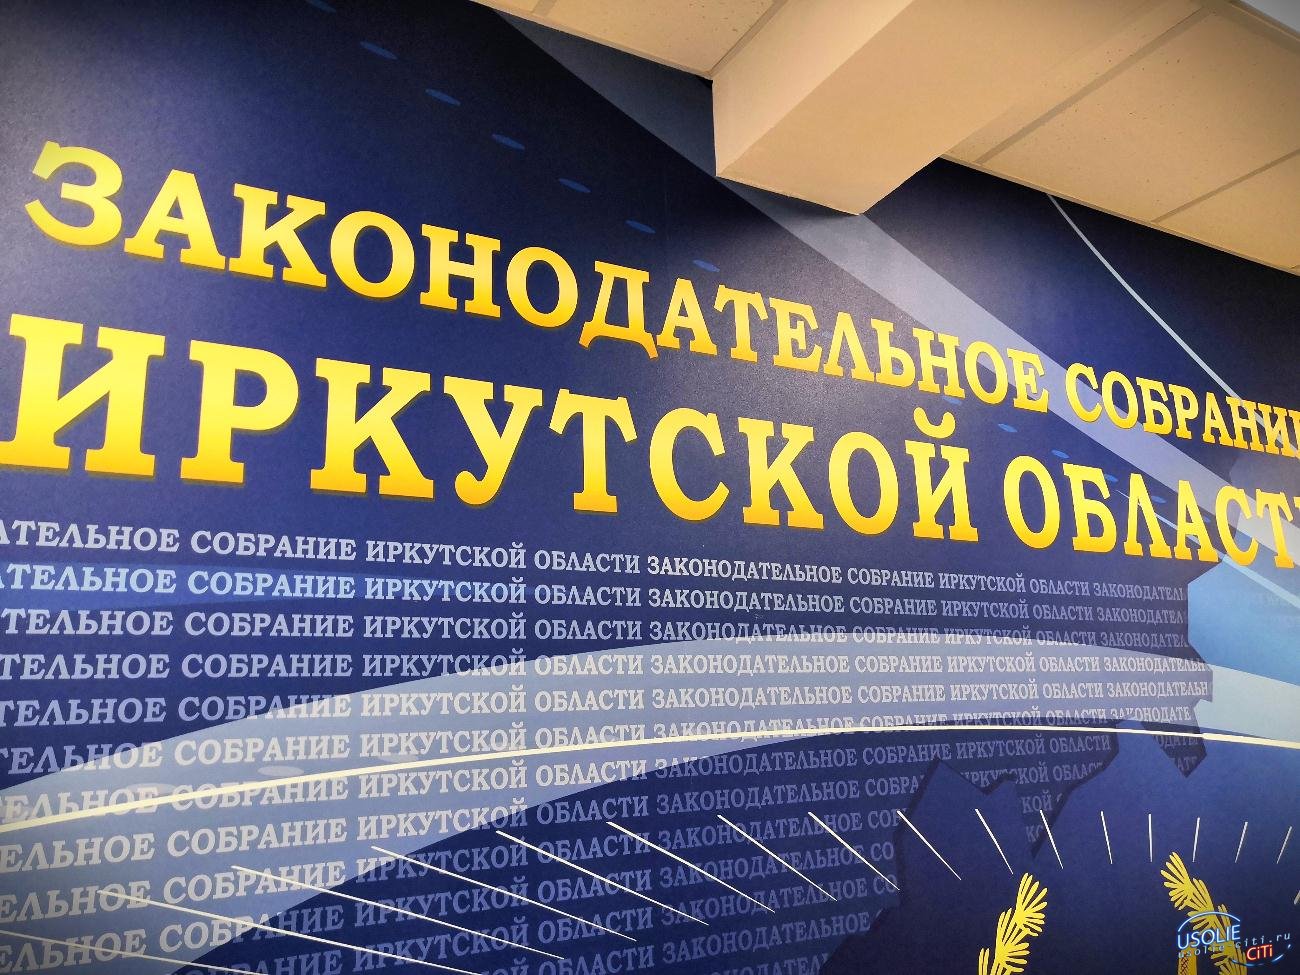 Усольчанин Михаил Ожиганов встретился со спикером парламента Иркутской области